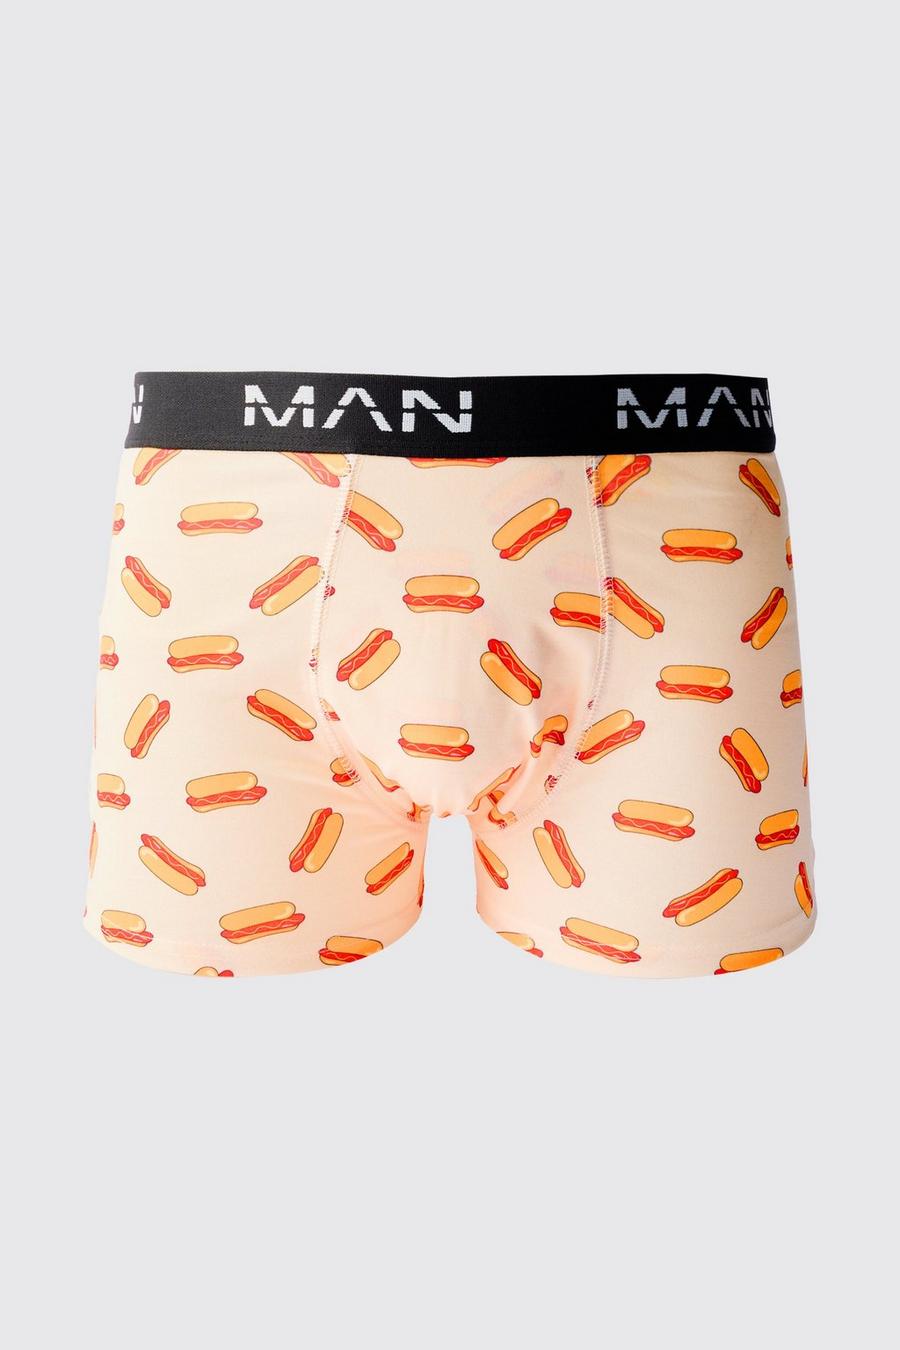 Man Boxershorts mit Hot Dog-Print, Multi